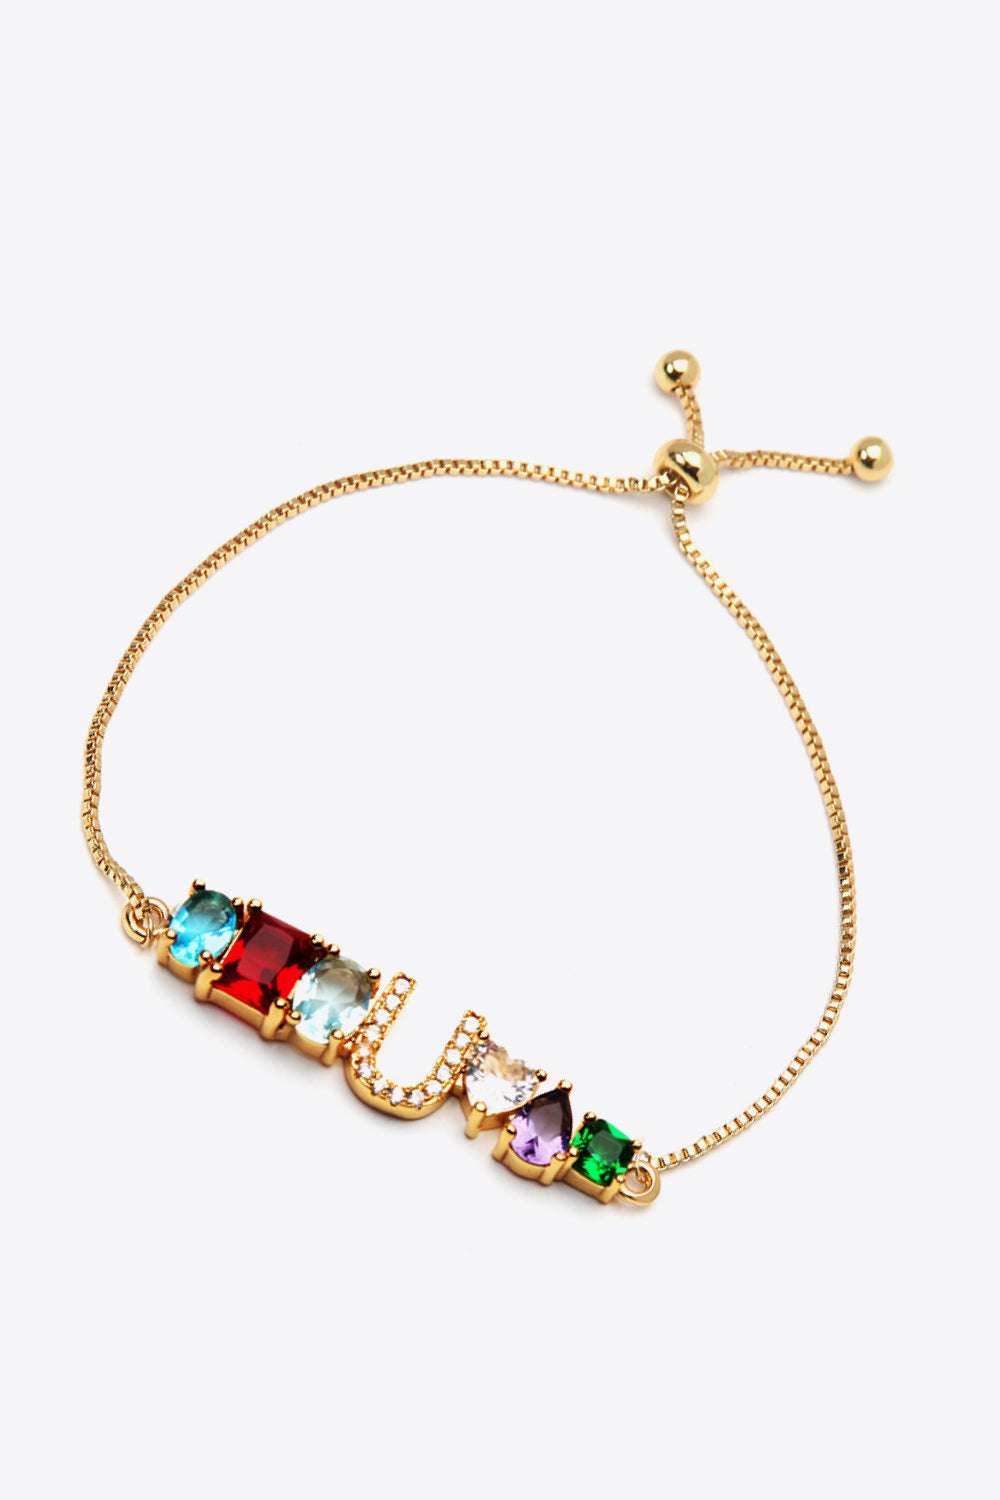 U to Z Zircon Bracelet - Women’s Jewelry - Bracelets - 2 - 2024